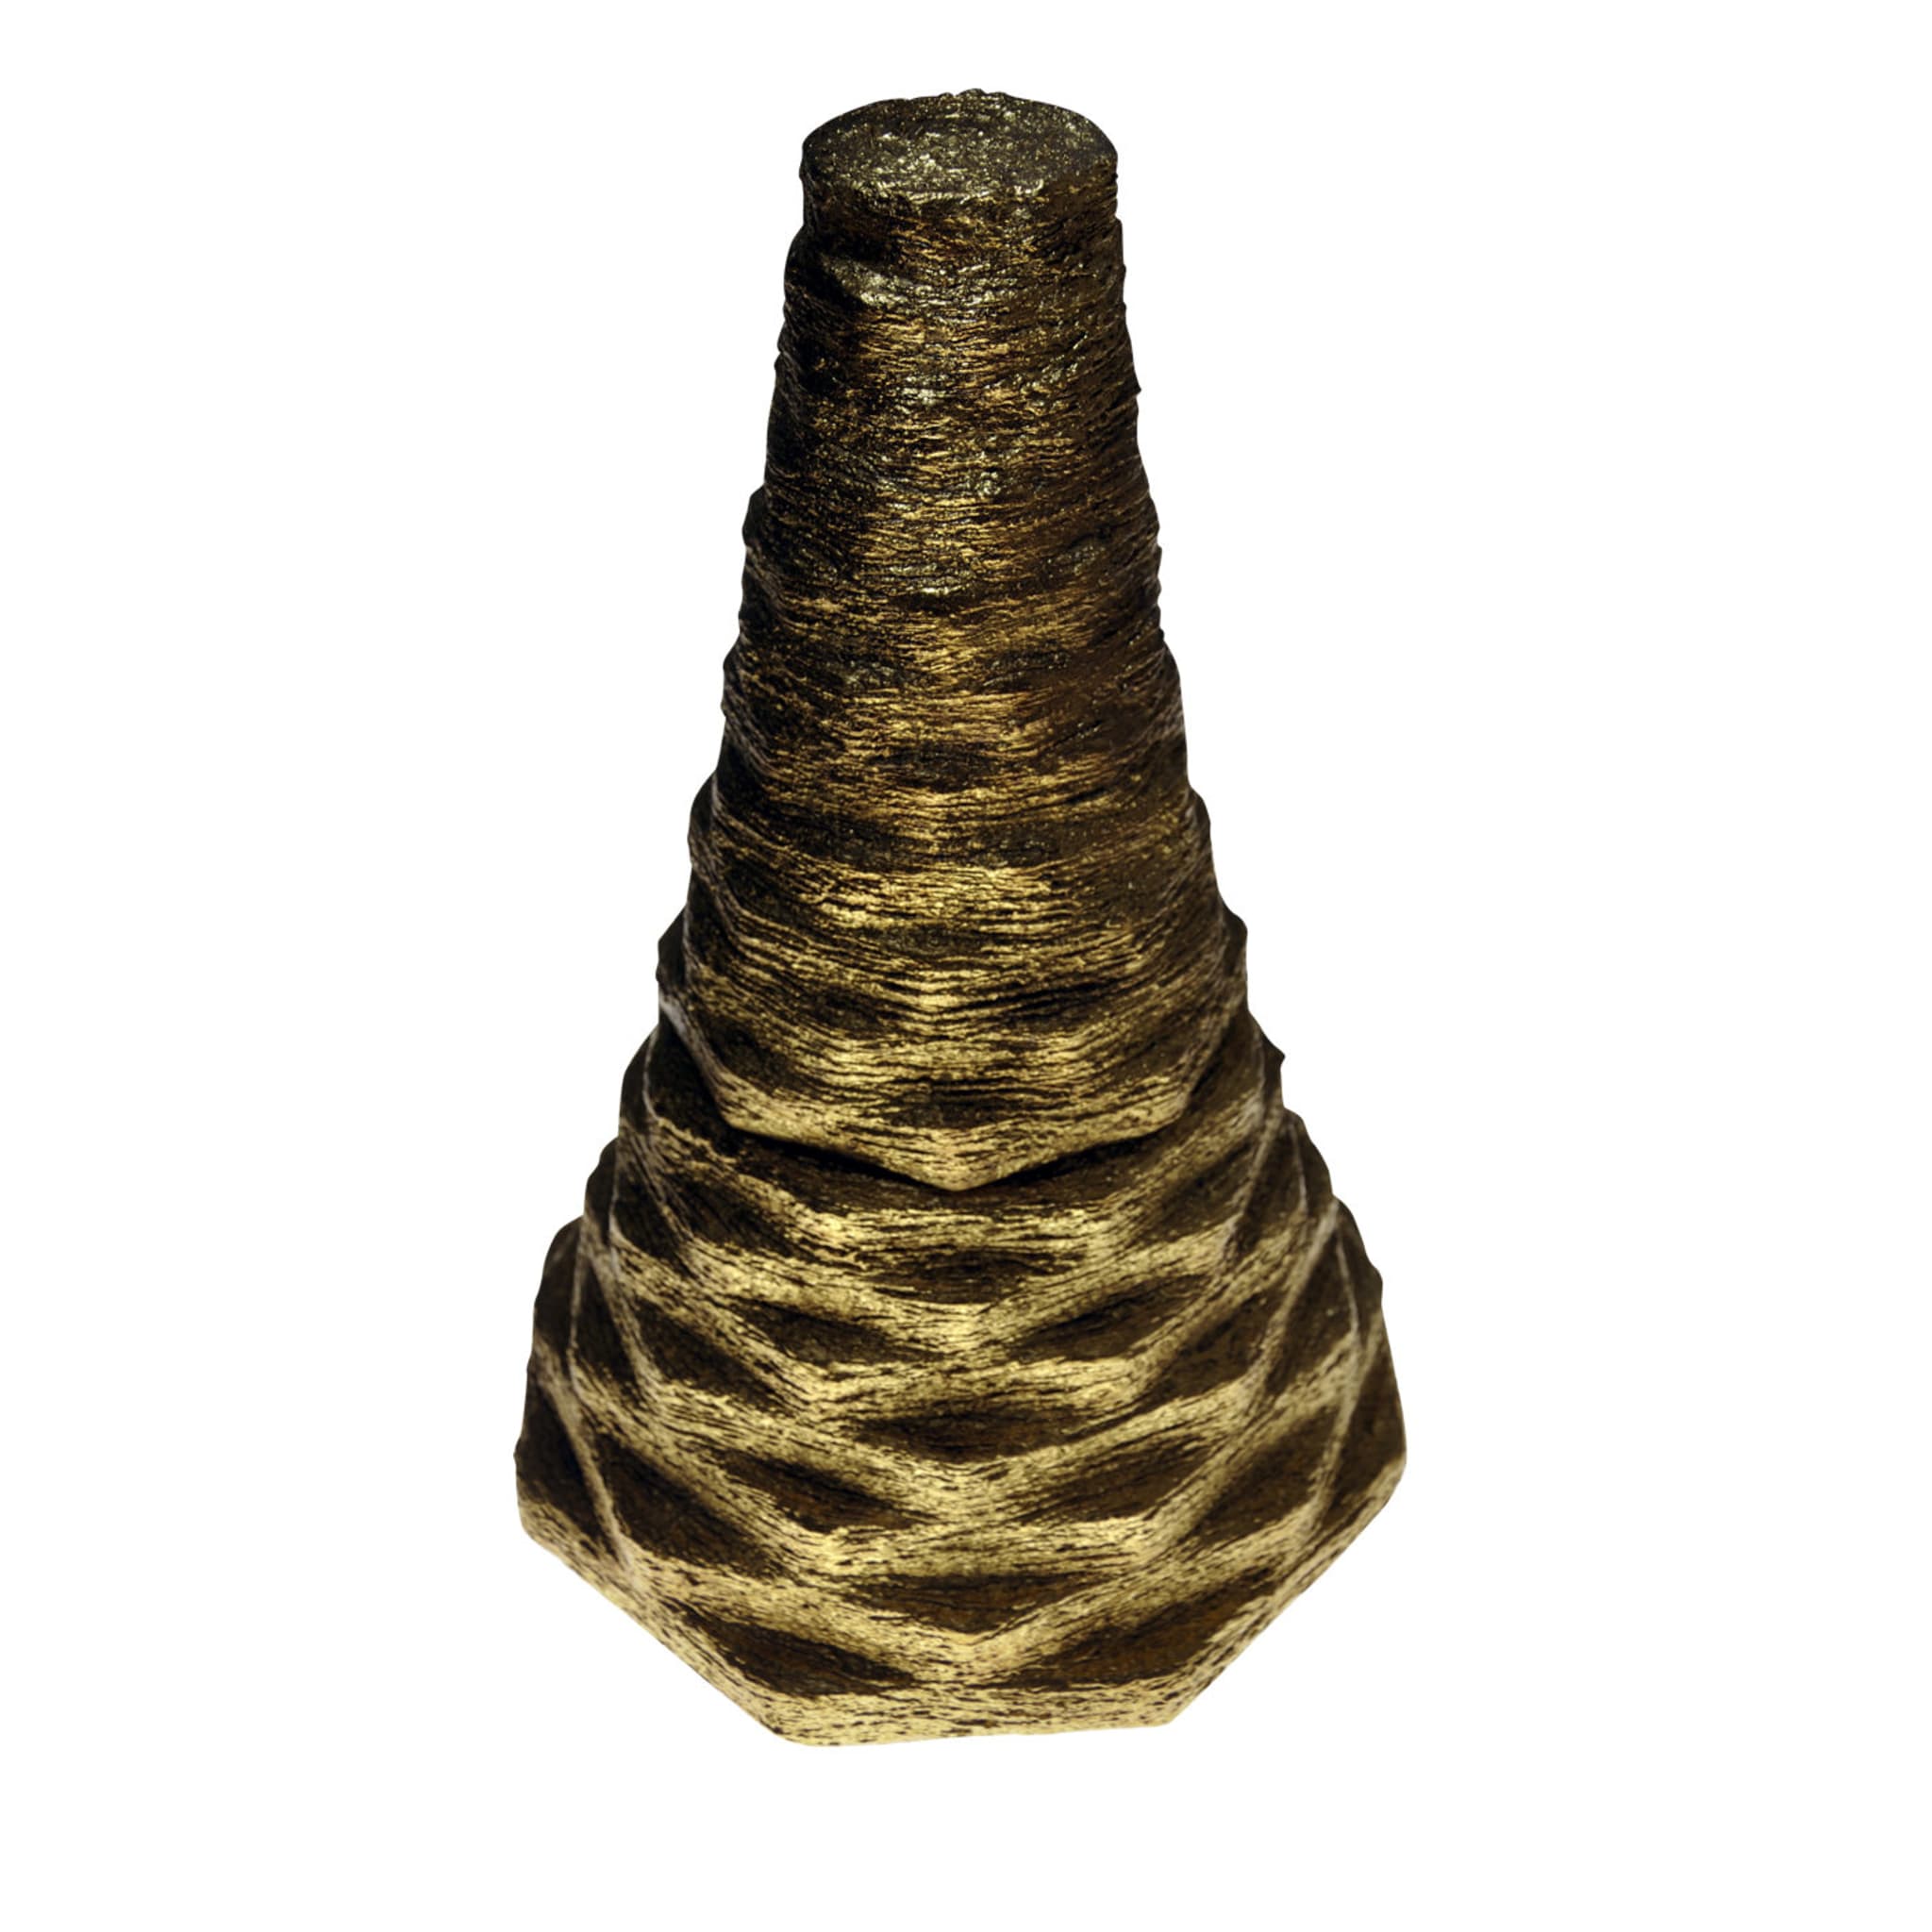 Vase in Burnished Gold Leaf  - Main view